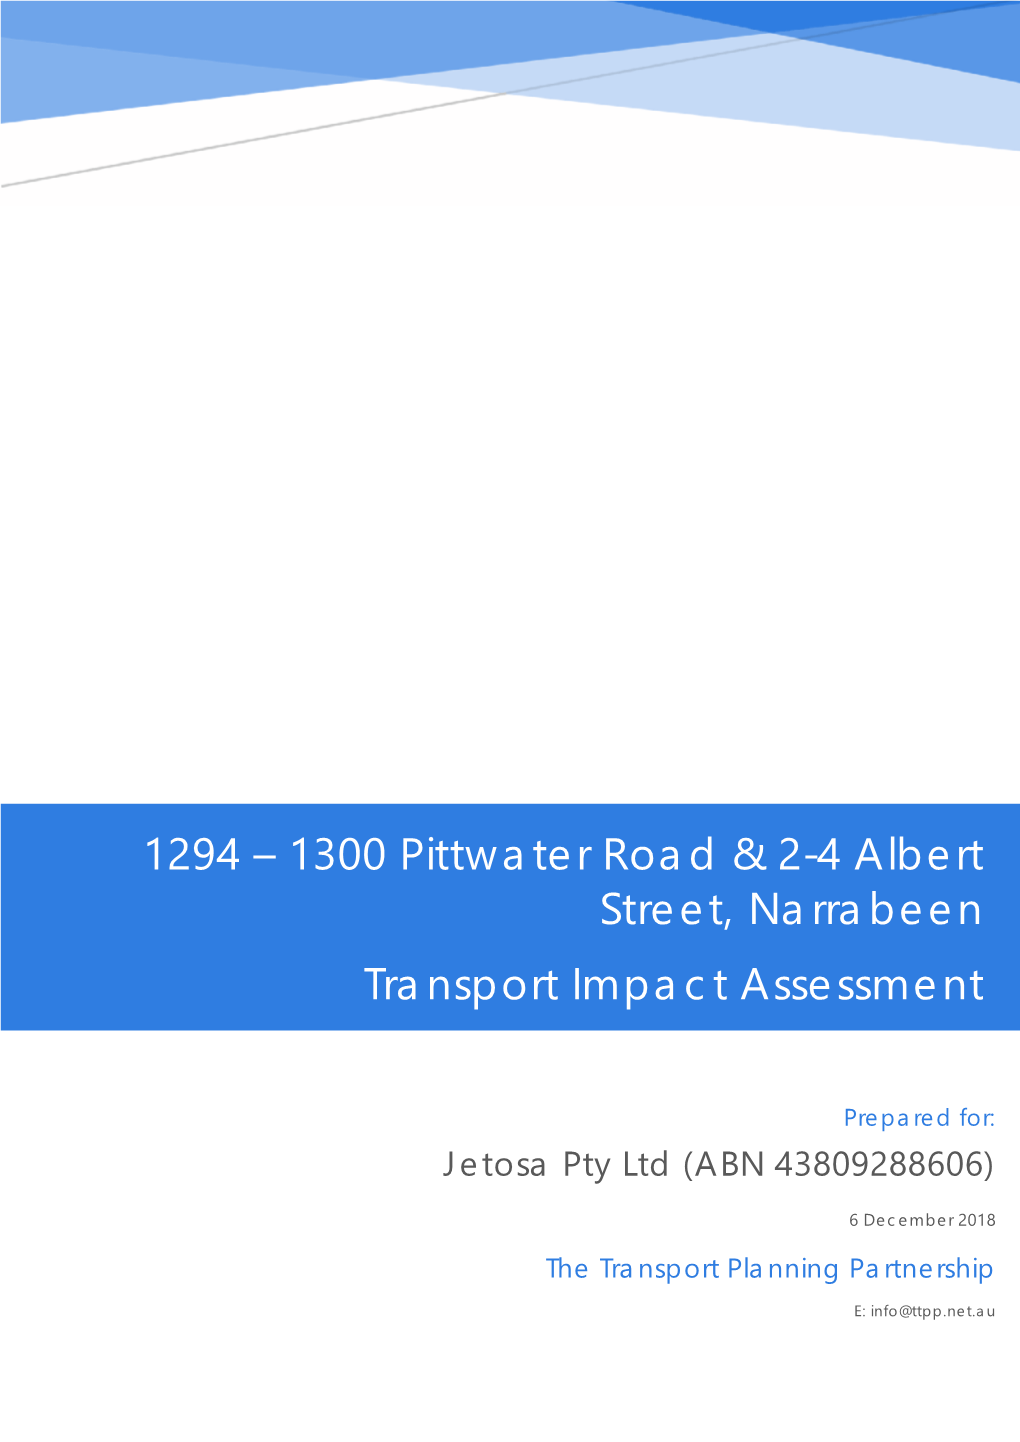 1294 – 1300 Pittwater Road & 2-4 Albert Street, Narrabeen